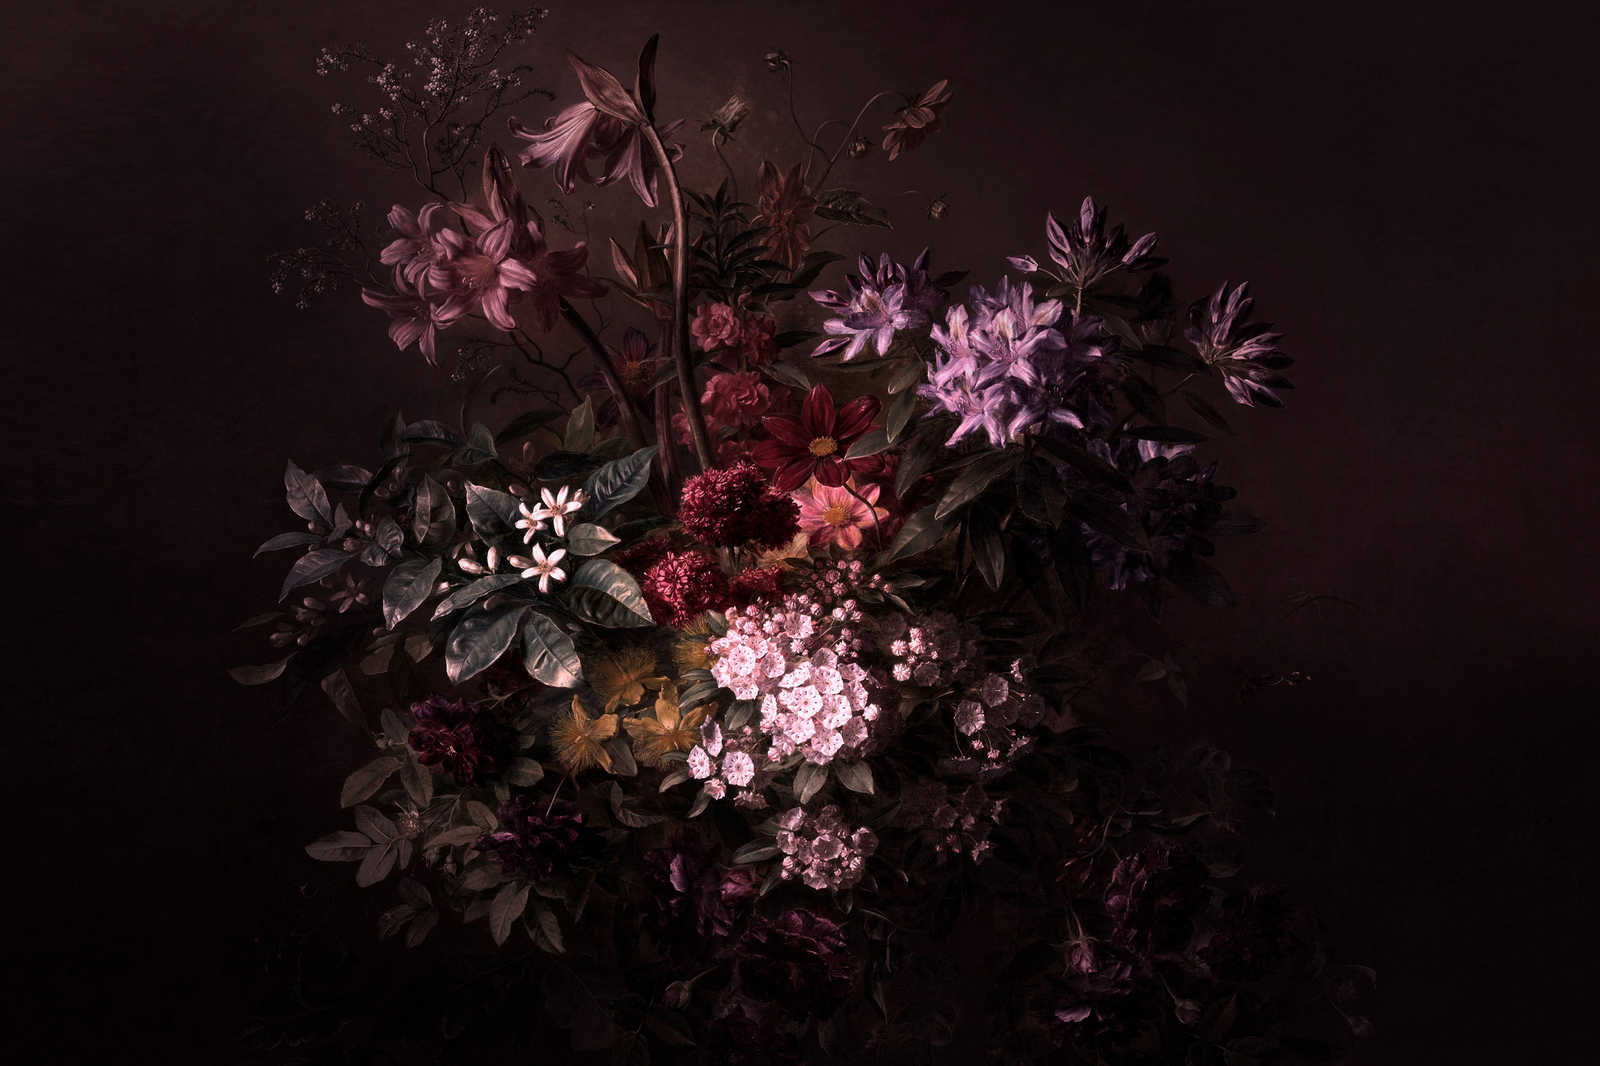             Leinwandbild Blumen Stillleben – 0,90 m x 0,60 m
        